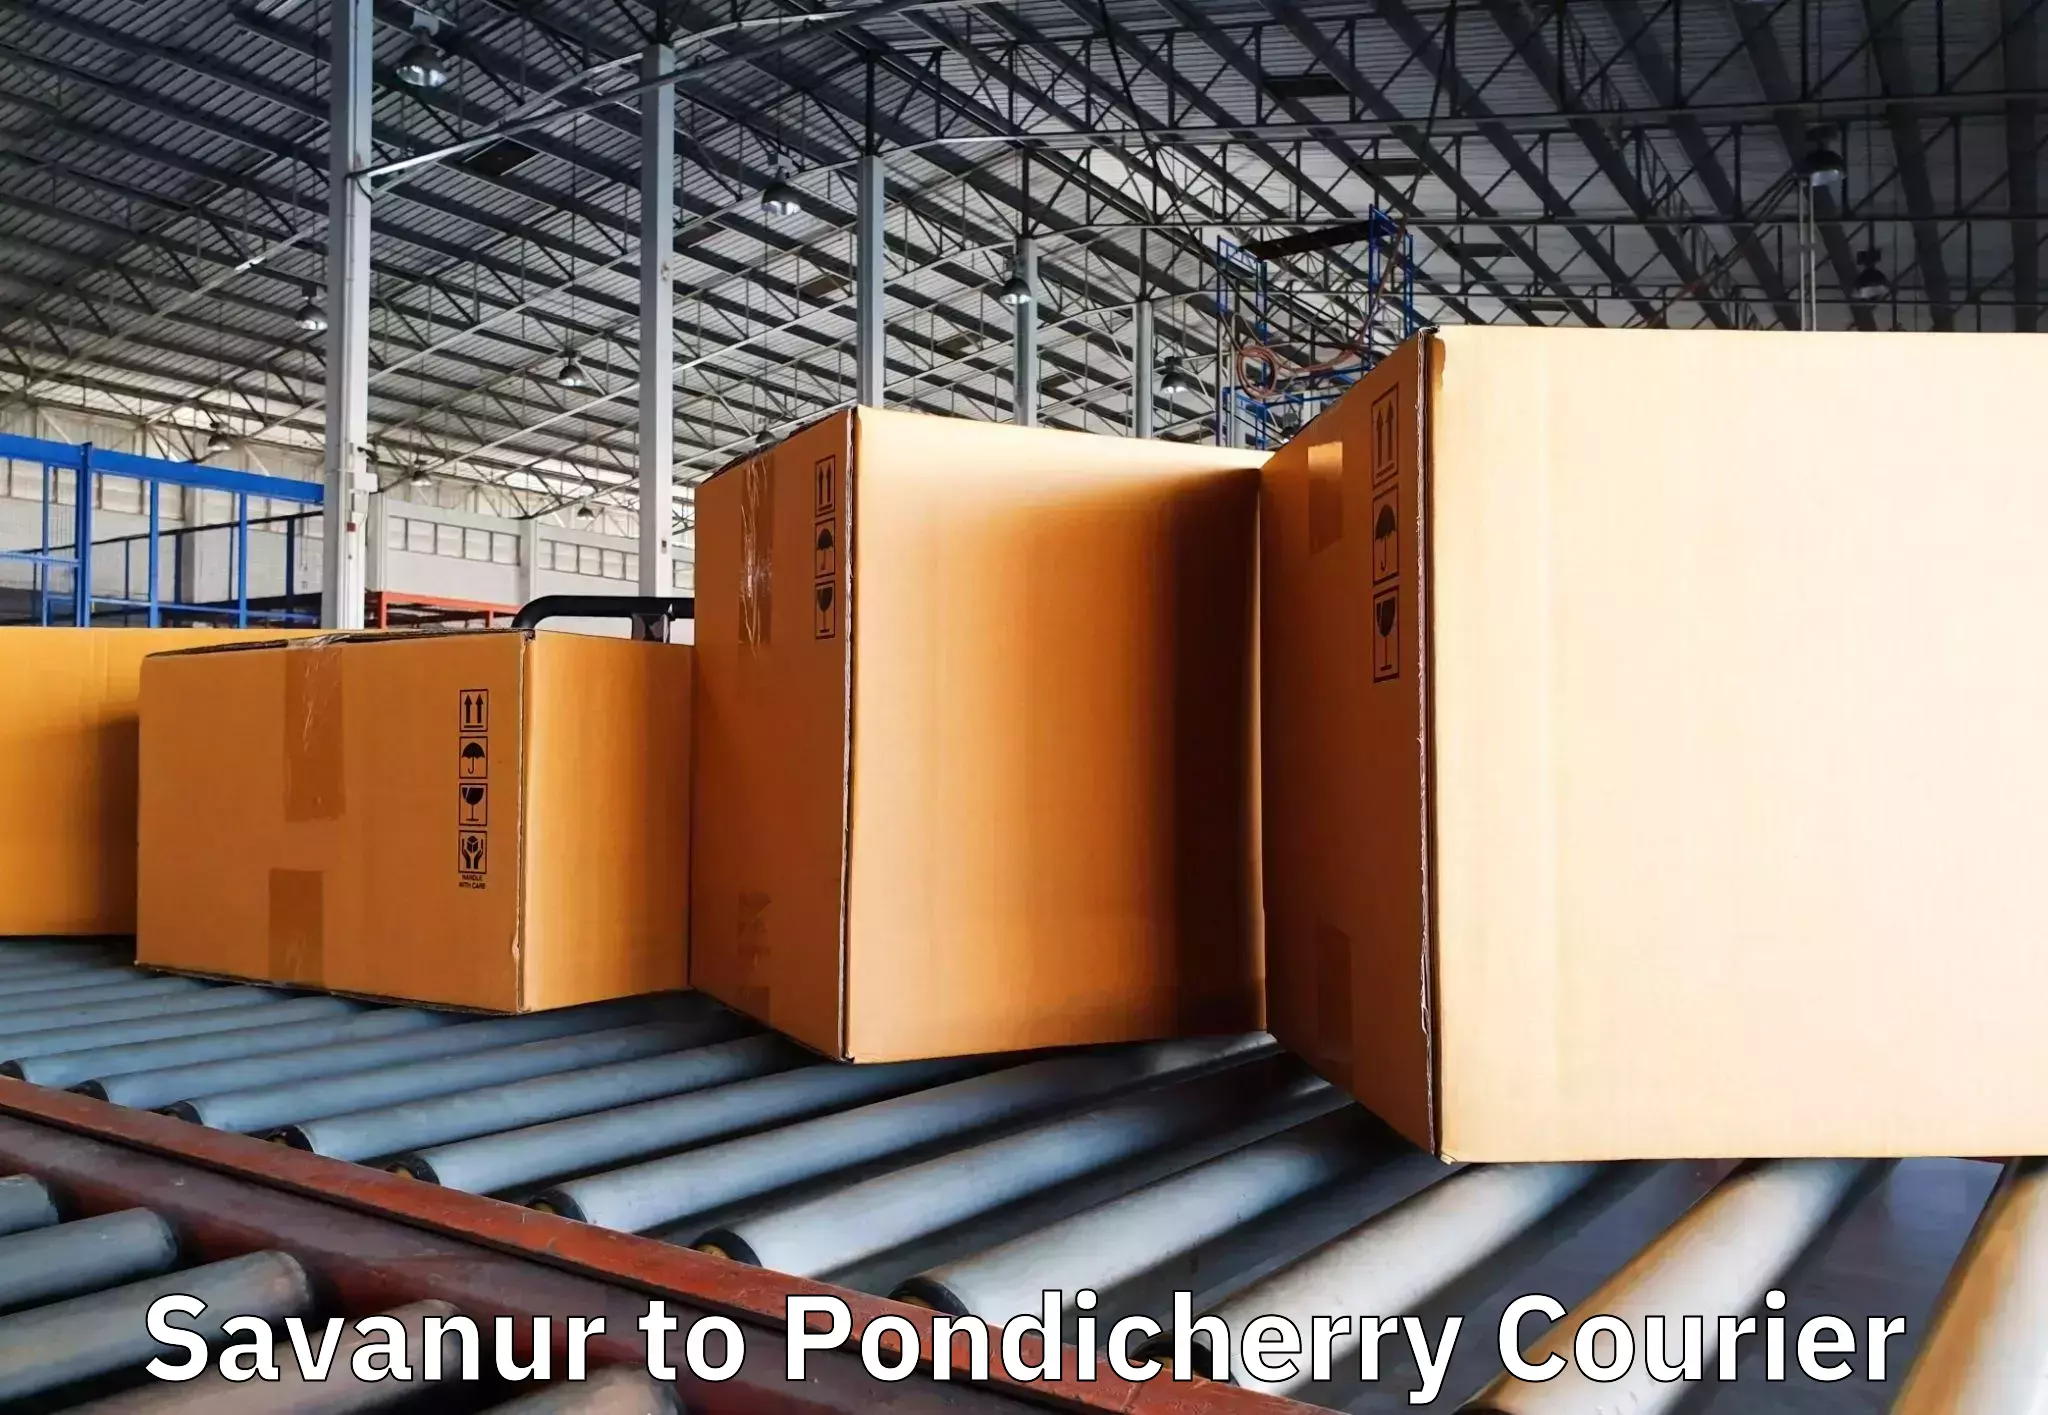 Furniture transport experts Savanur to Pondicherry